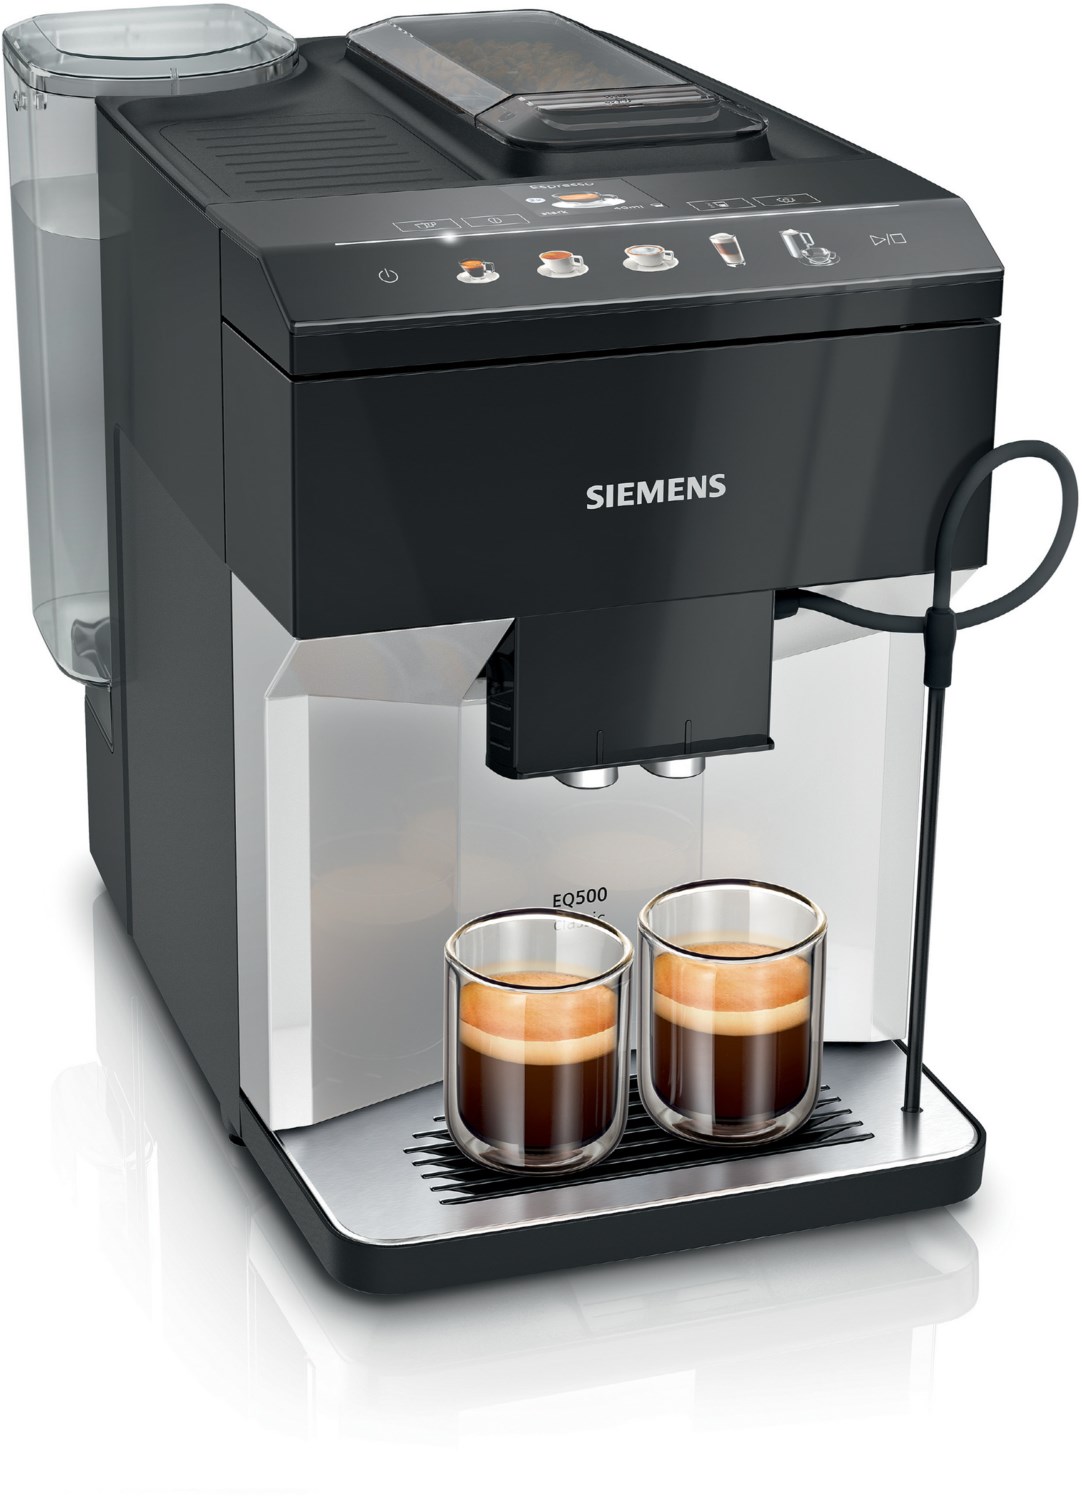 TP511D01 Kaffee-Vollautomat silber/schwarz